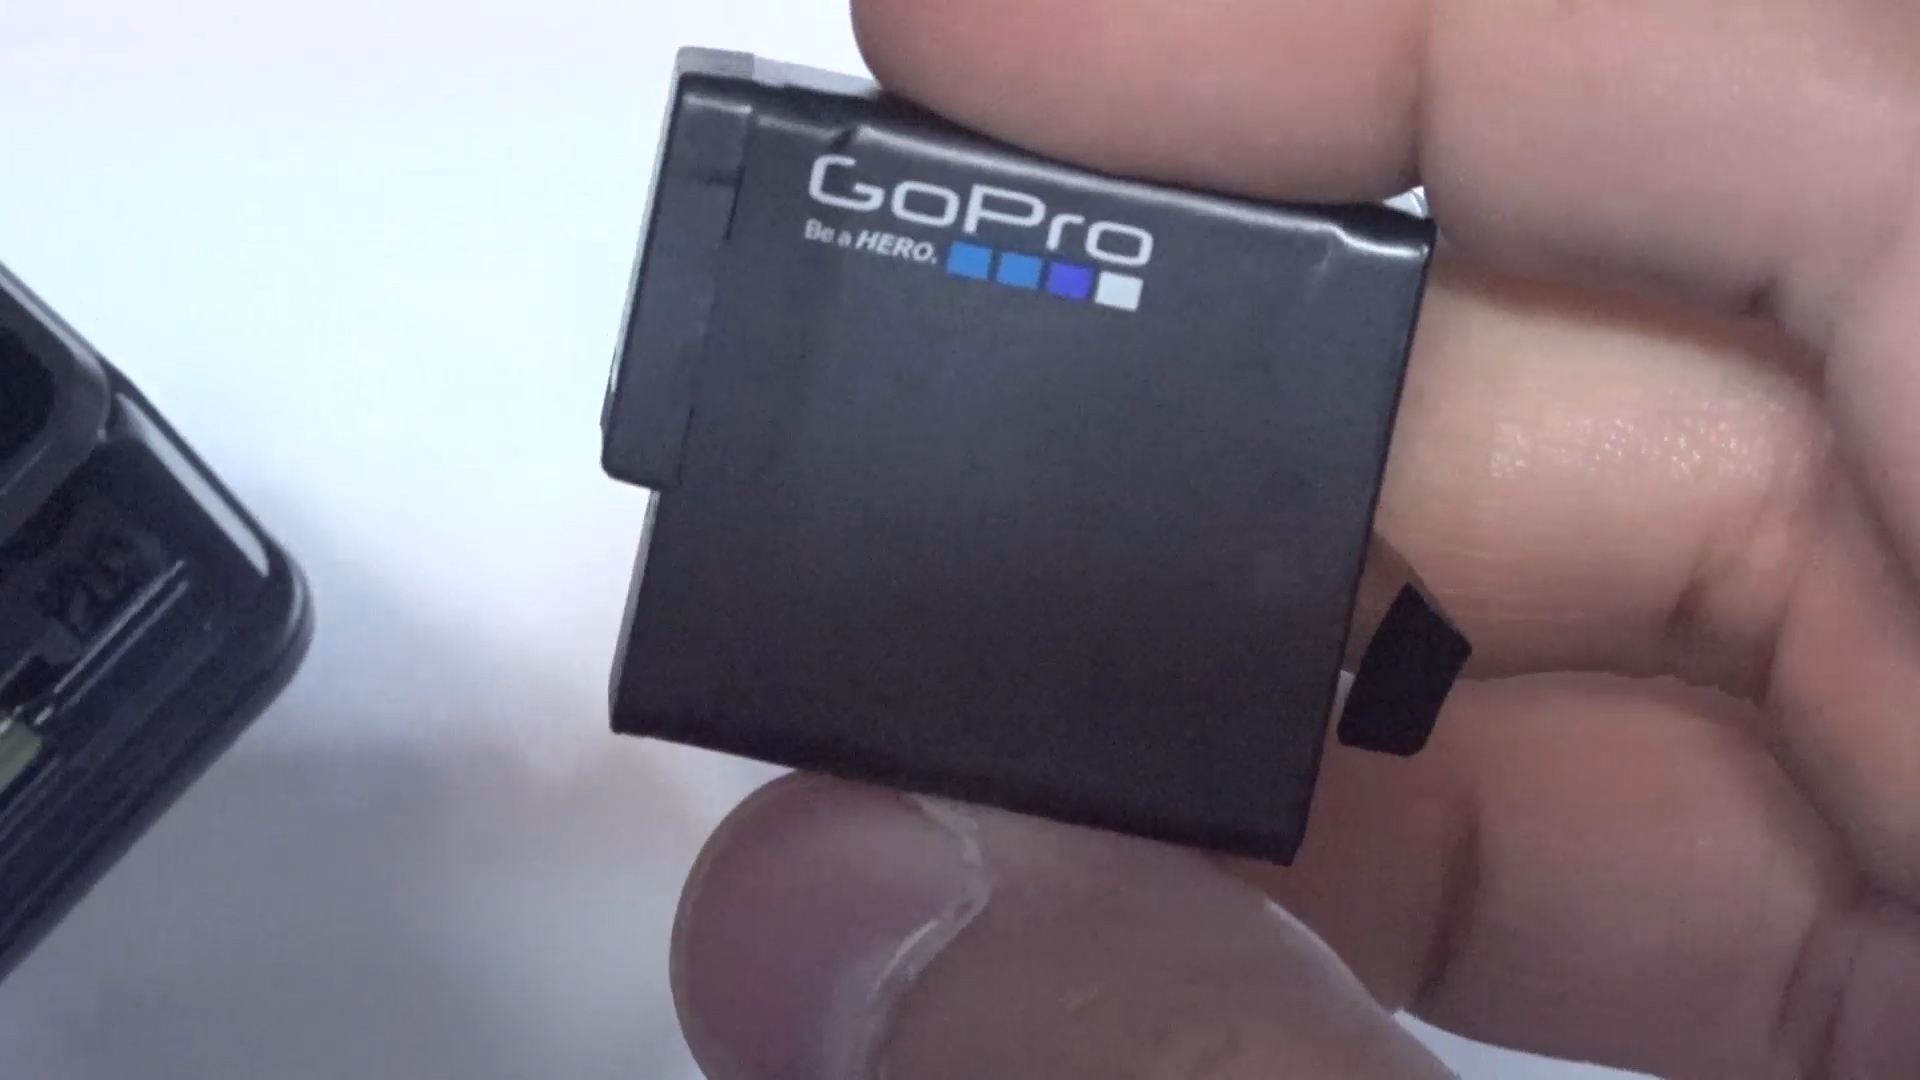 GoPro Hero 5 Black ön inceleme videosu 'Aksiyonun yeni yıldızı'